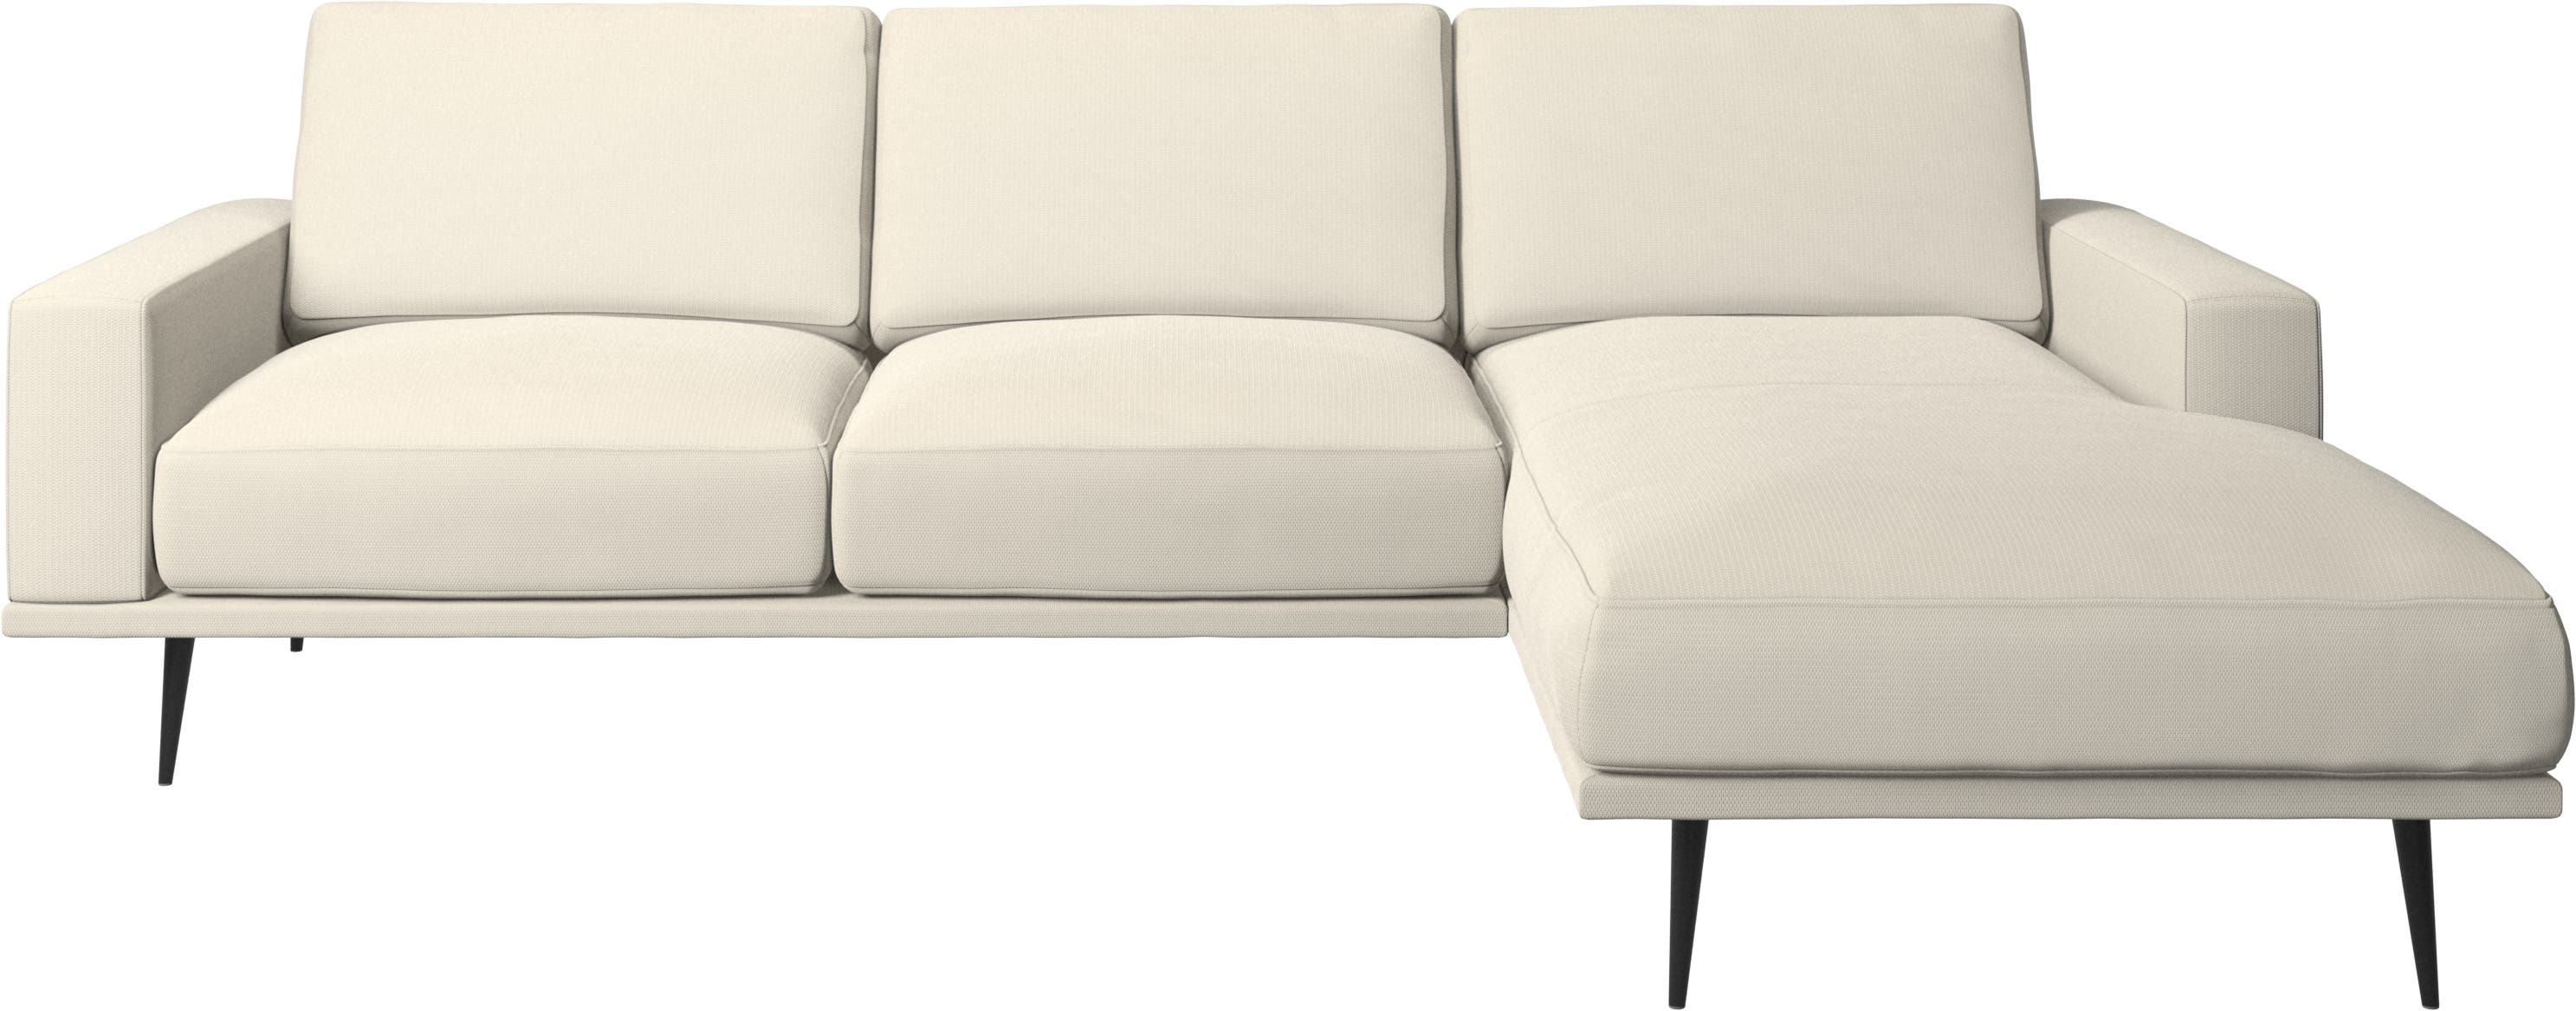 Carlton sofa med hvilemodul